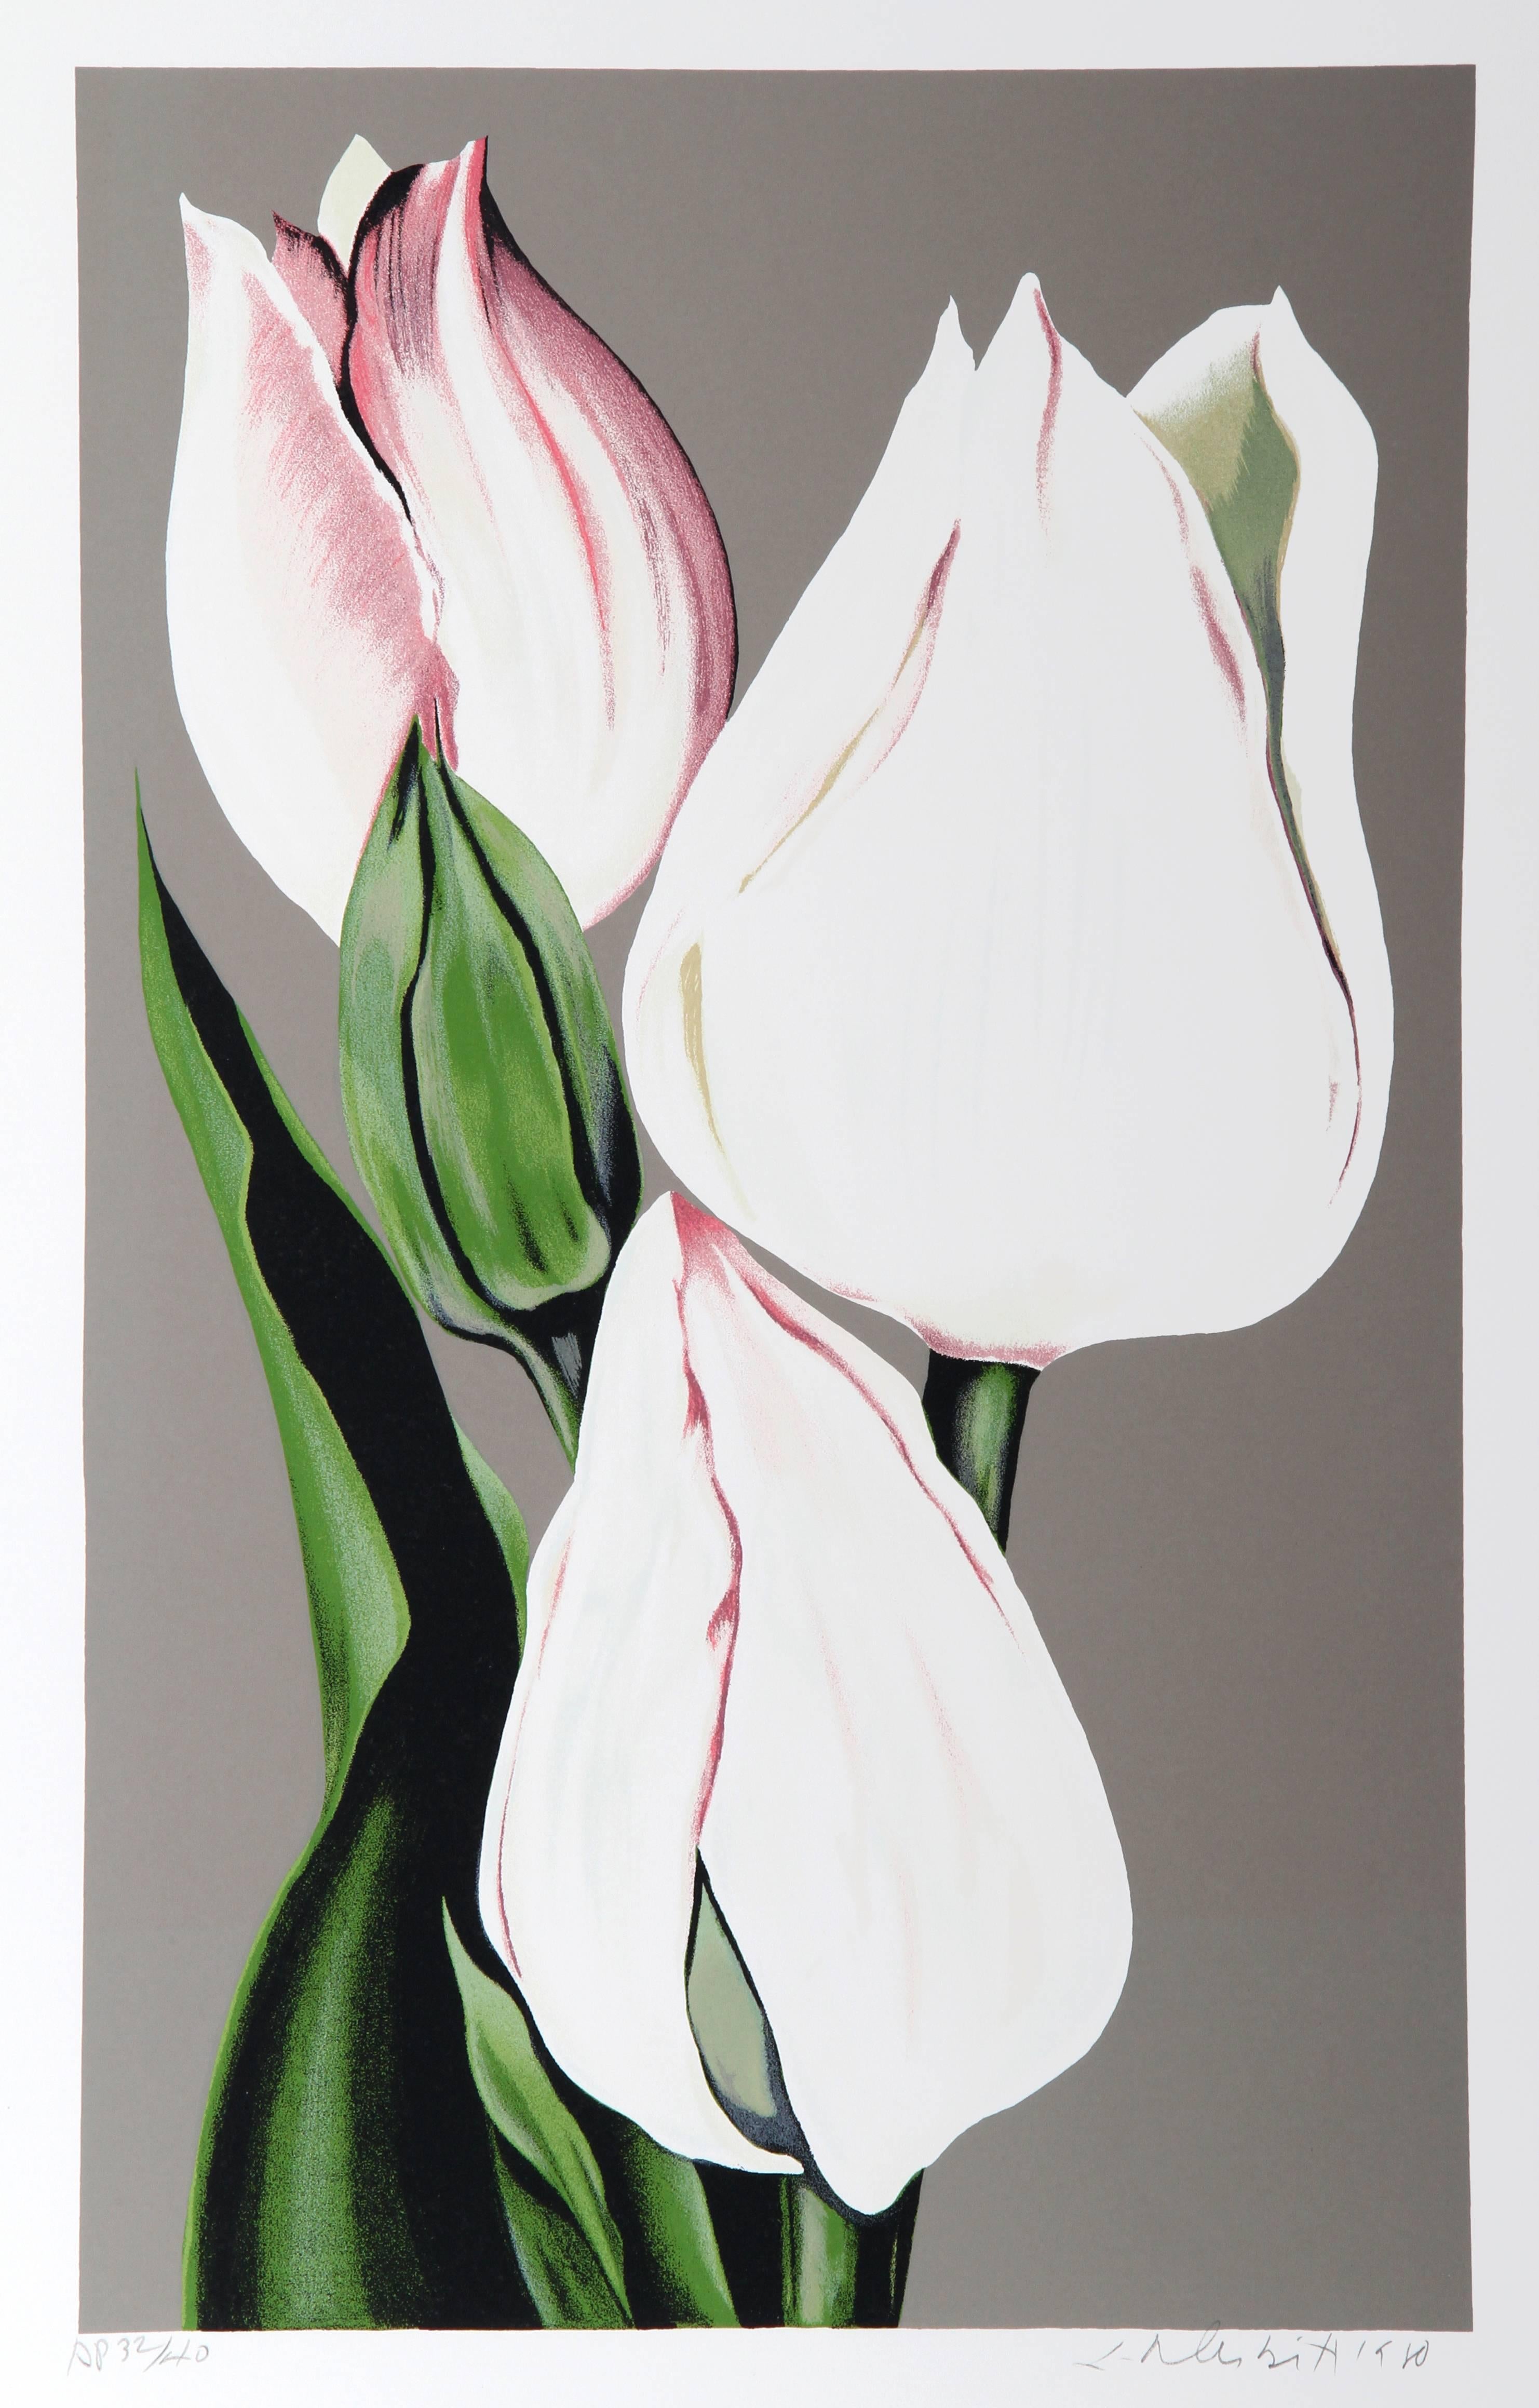 Künstler: Lowell Blair Nesbitt, Amerikaner (1933 - 1993)
Titel: Weiße Tulpen
Jahr: 1980
Medium: Siebdruck, signiert und nummeriert mit Bleistift
Auflage: 200, AP 40
Größe: 81,28 x 55,88 cm (32 x 22 Zoll)